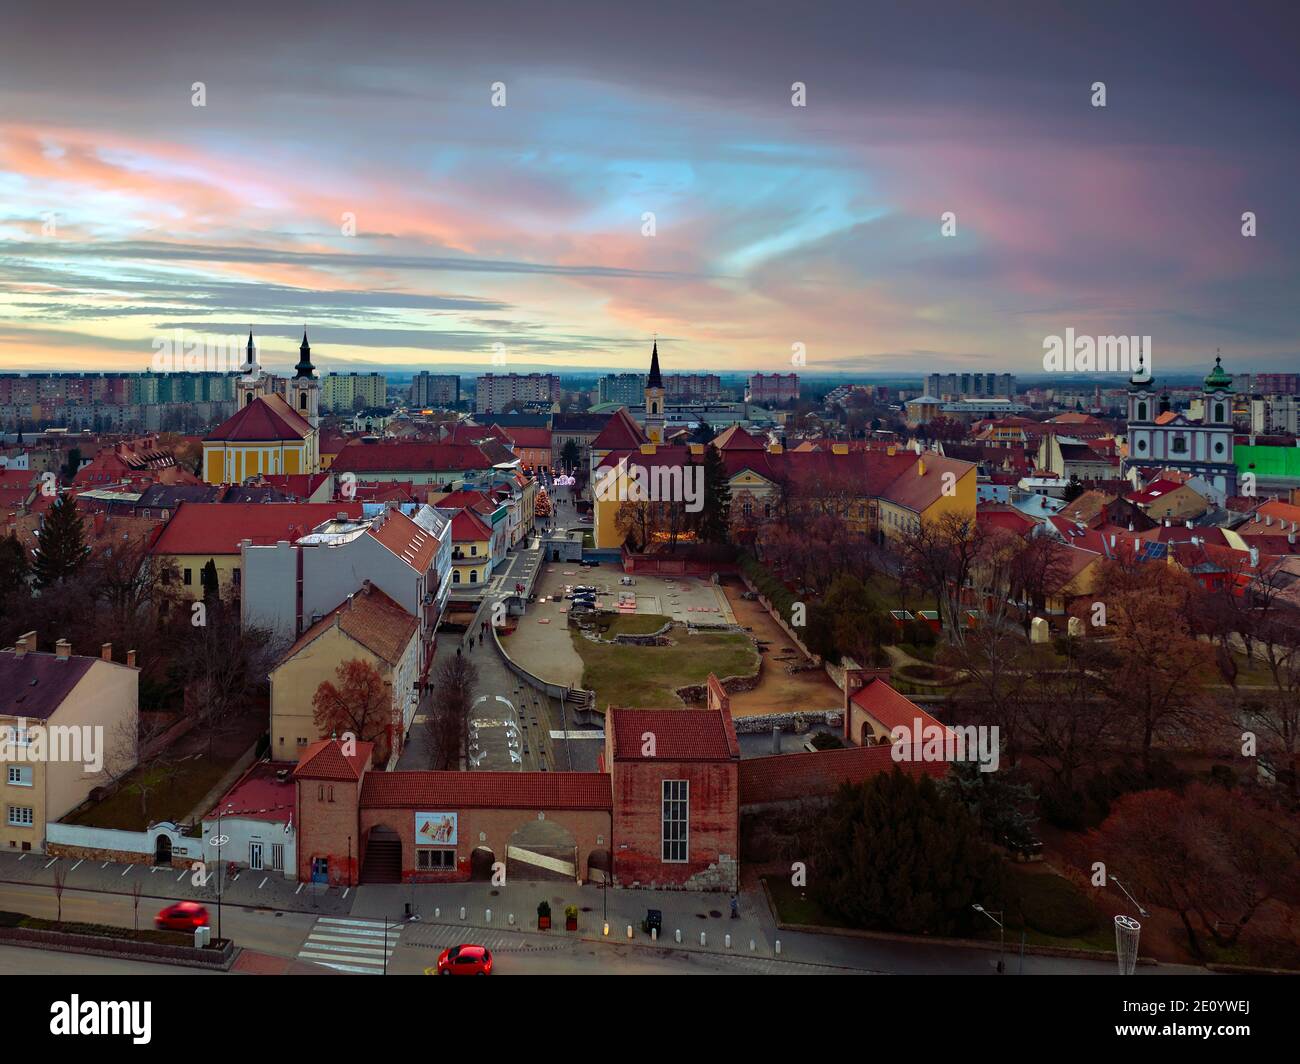 Foto aerea del centro storico di Szekesfehervar in Ungheria. Gli splendidi edifici storici includono chiese, statue e monumenti. Foto Stock